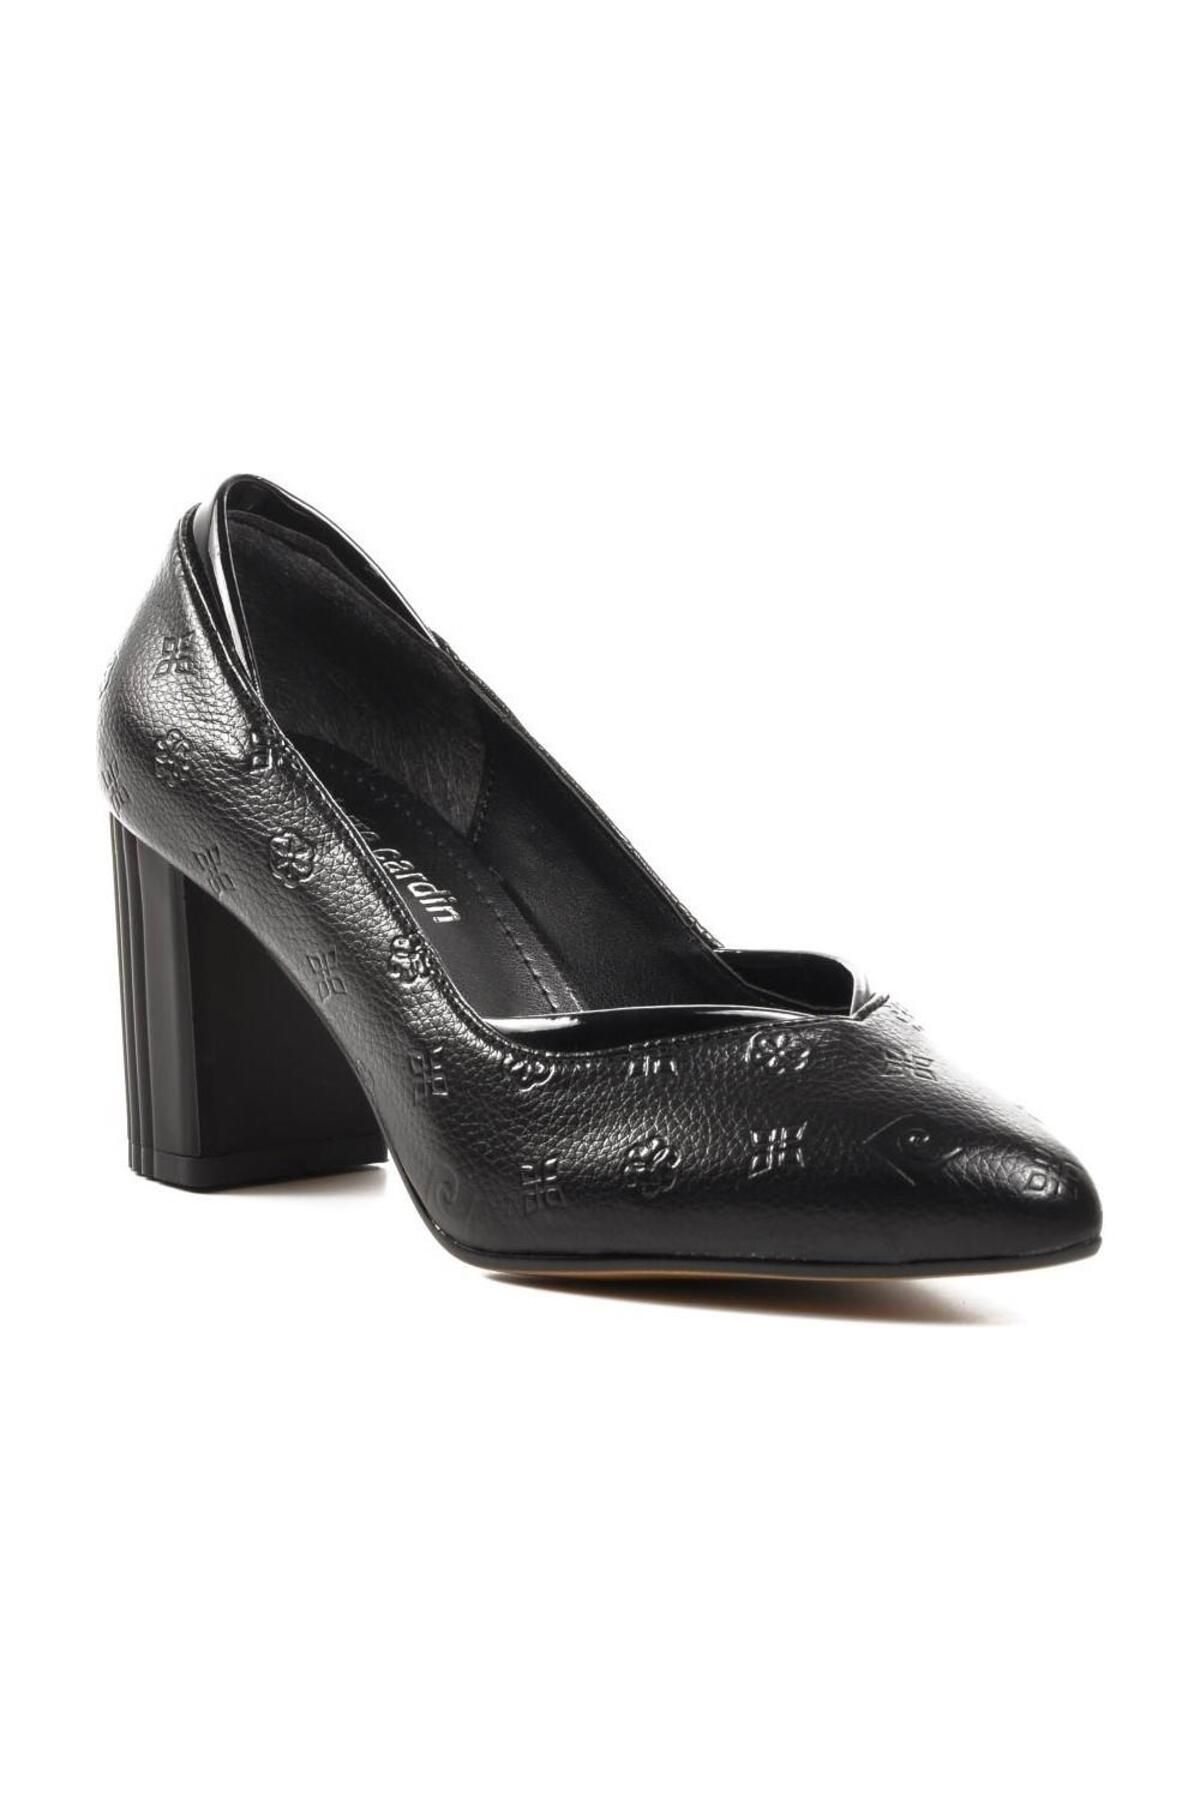 Pierre Cardin PC-51199 Siyah Kadın Topuklu Ayakkabı